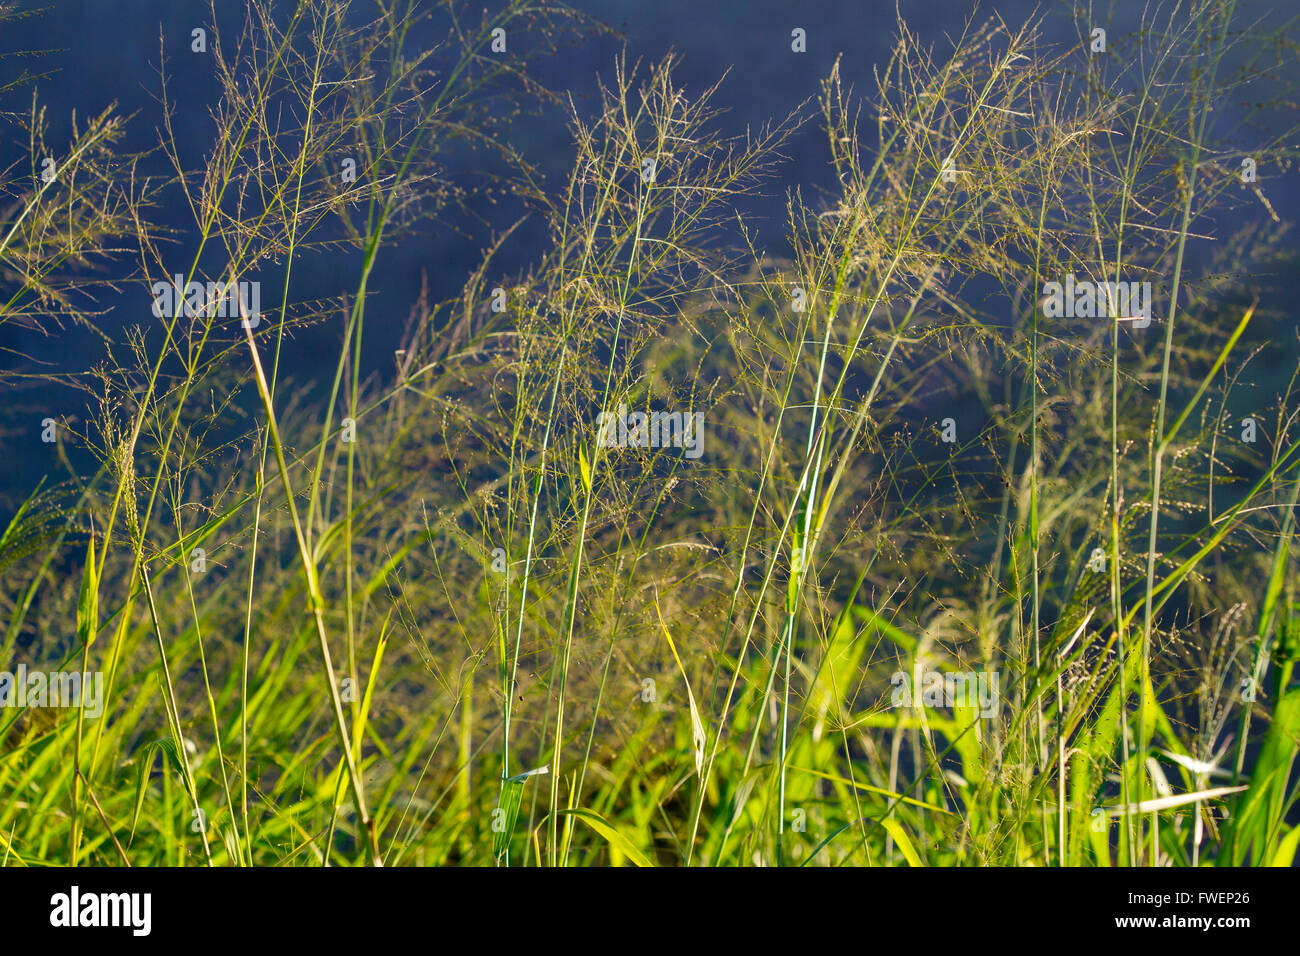 Quelques grands champ herbe photographié contre un ciel d'orage sombre crée cette image abstraite unique et intéressant. Banque D'Images